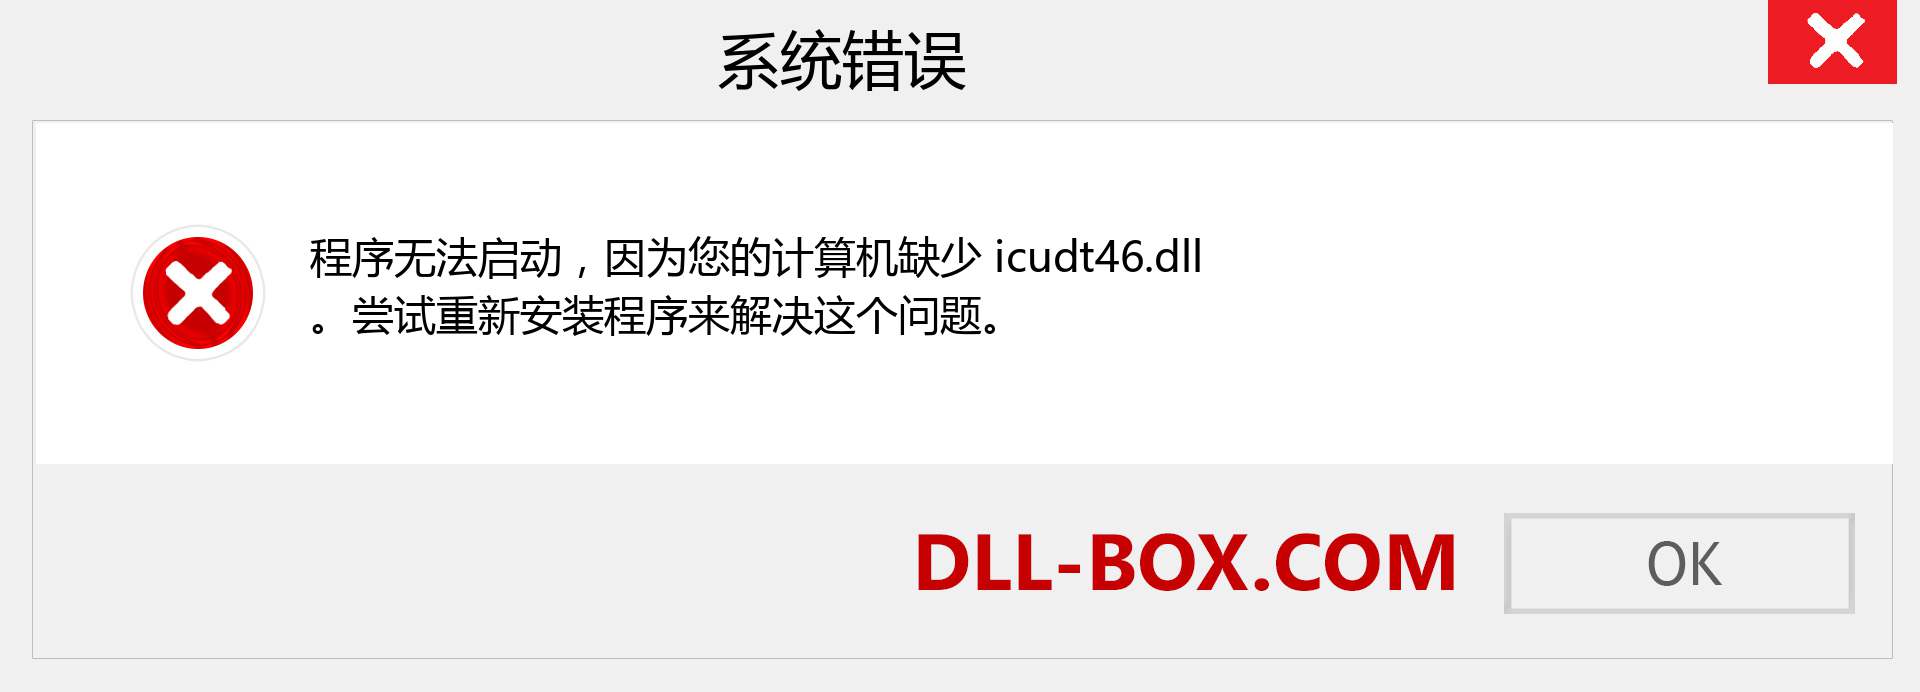 icudt46.dll 文件丢失？。 适用于 Windows 7、8、10 的下载 - 修复 Windows、照片、图像上的 icudt46 dll 丢失错误